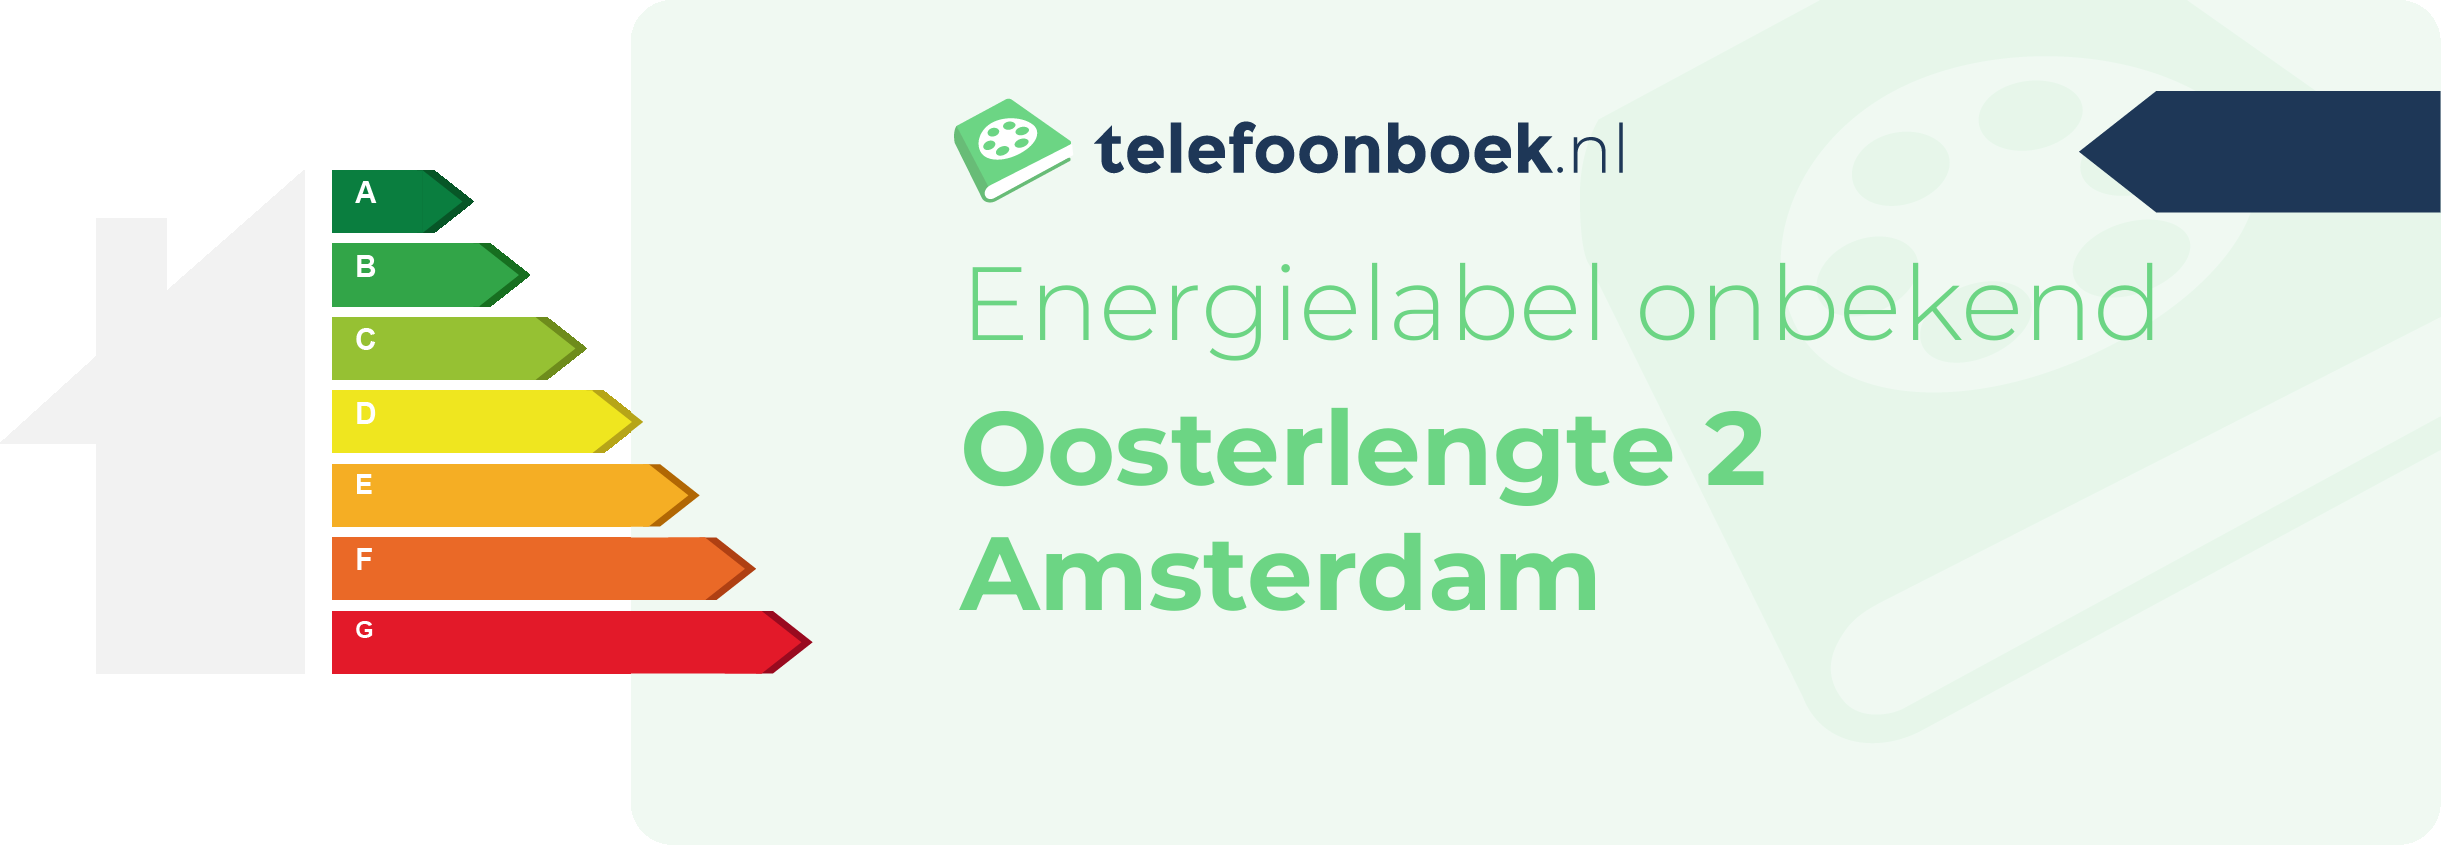 Energielabel Oosterlengte 2 Amsterdam